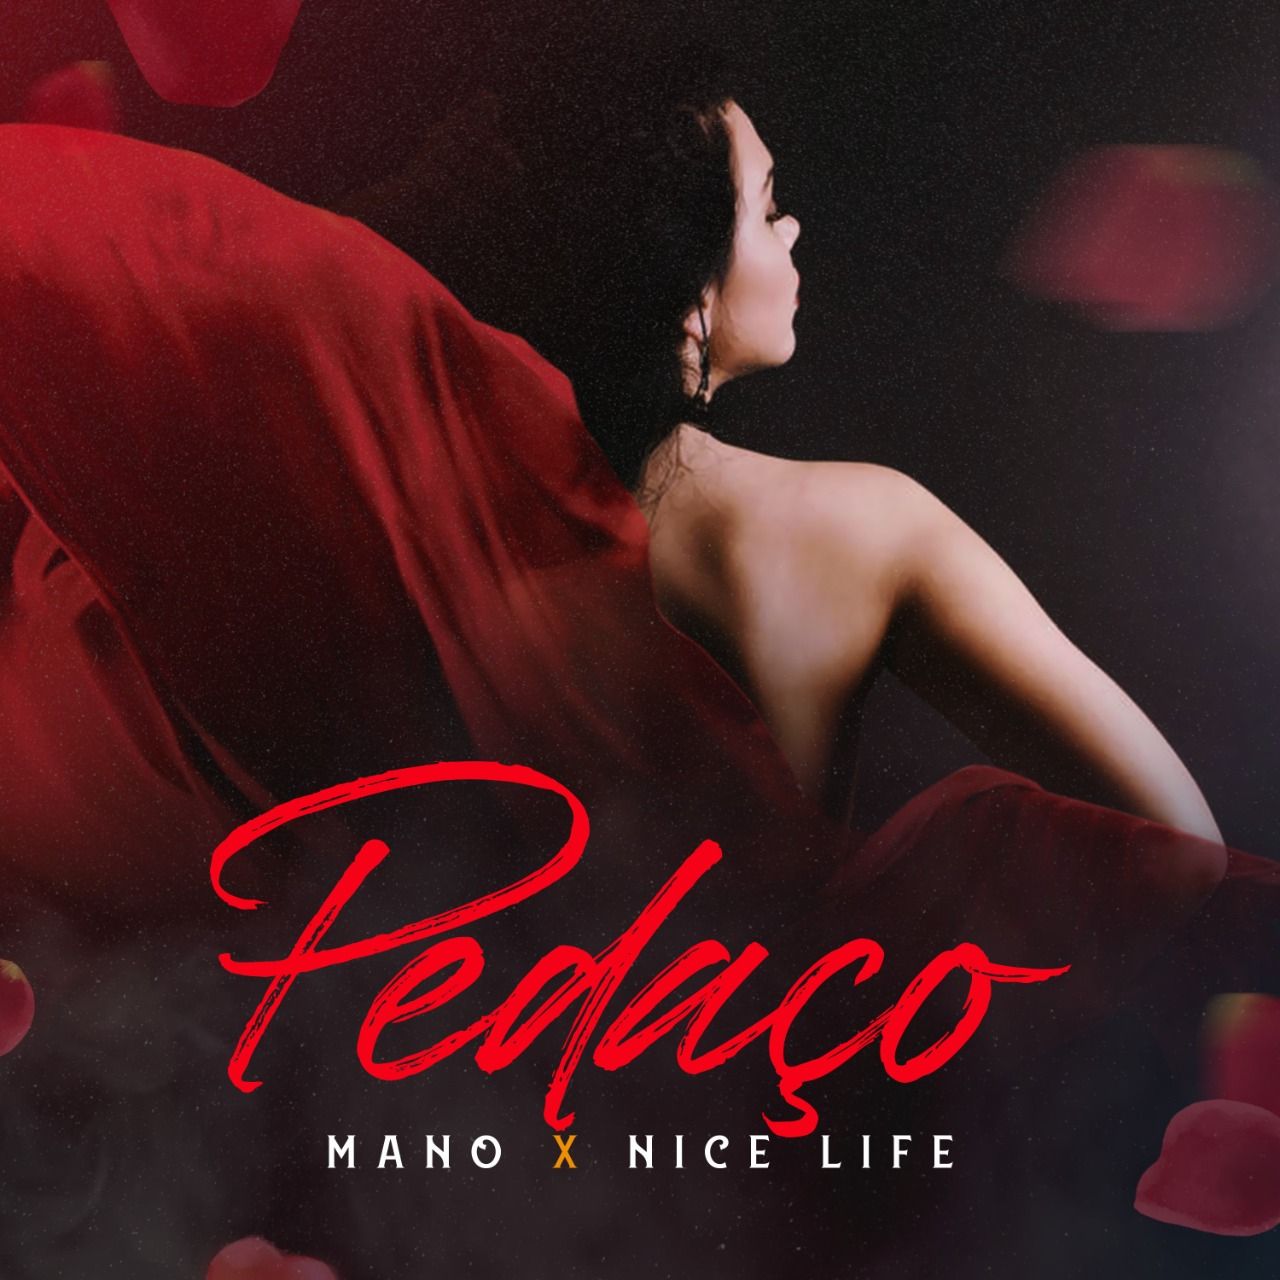 பதிவிறக்க Tamil Mano X Nice Life - Pedaco